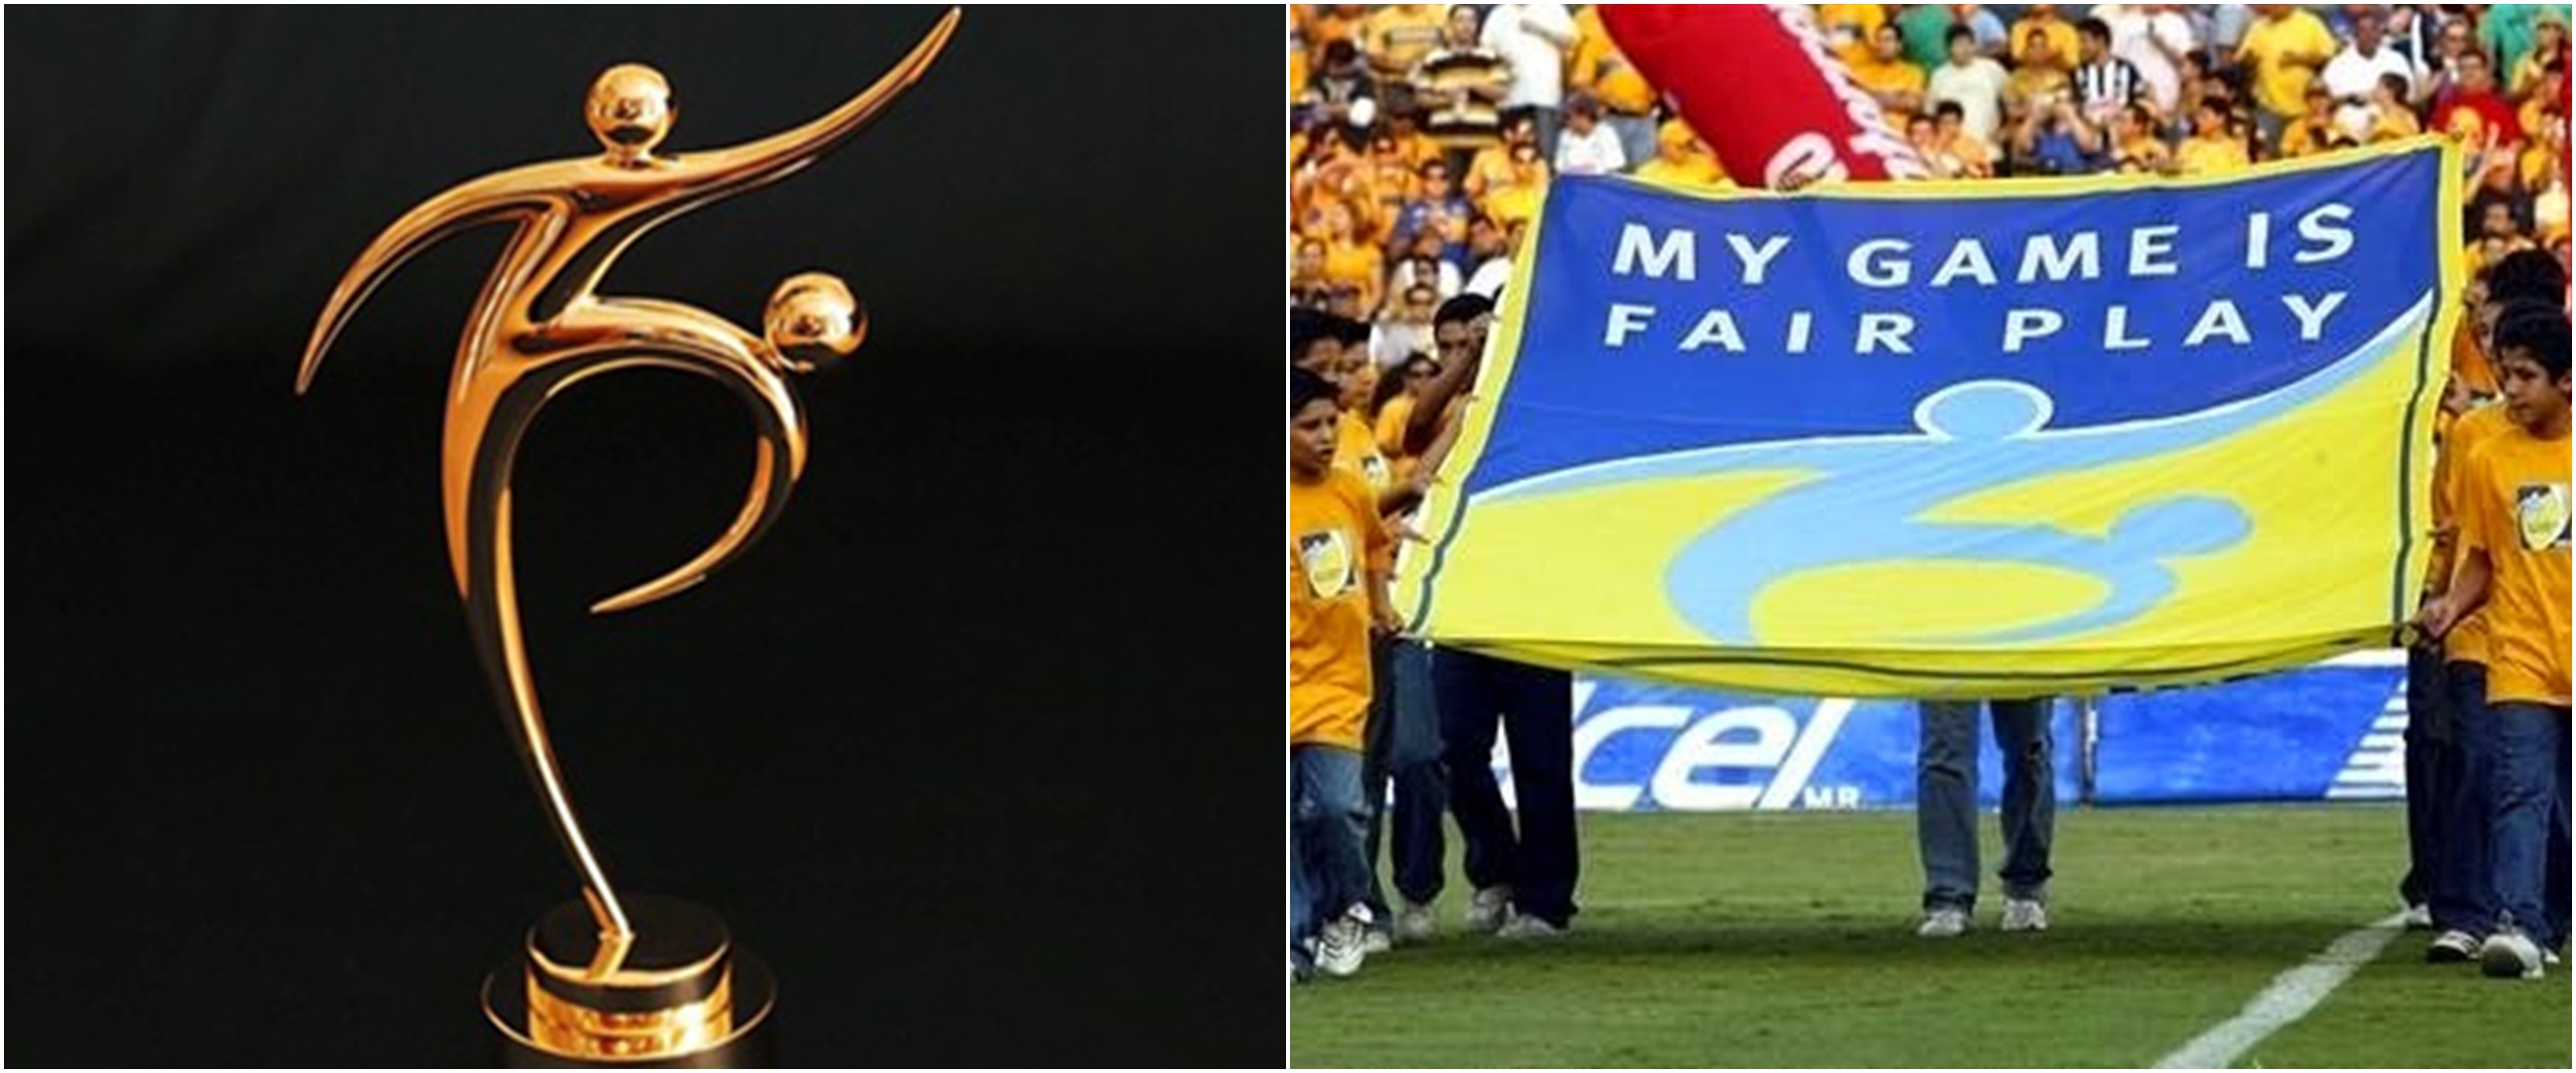 Daftar peraih Fair Play Award di Piala Dunia, jadi tim paling sportif 